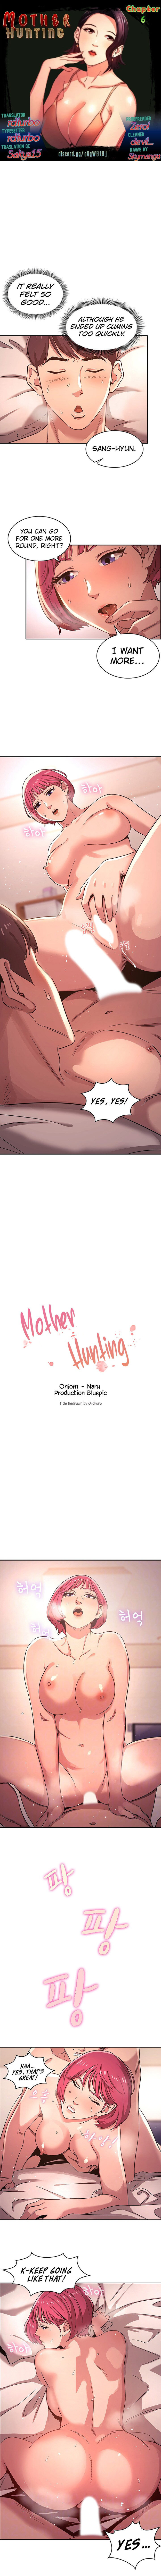 The image Mother Hunting - Chapter 06 - mv92KwKBt8X23Pa - ManhwaManga.io